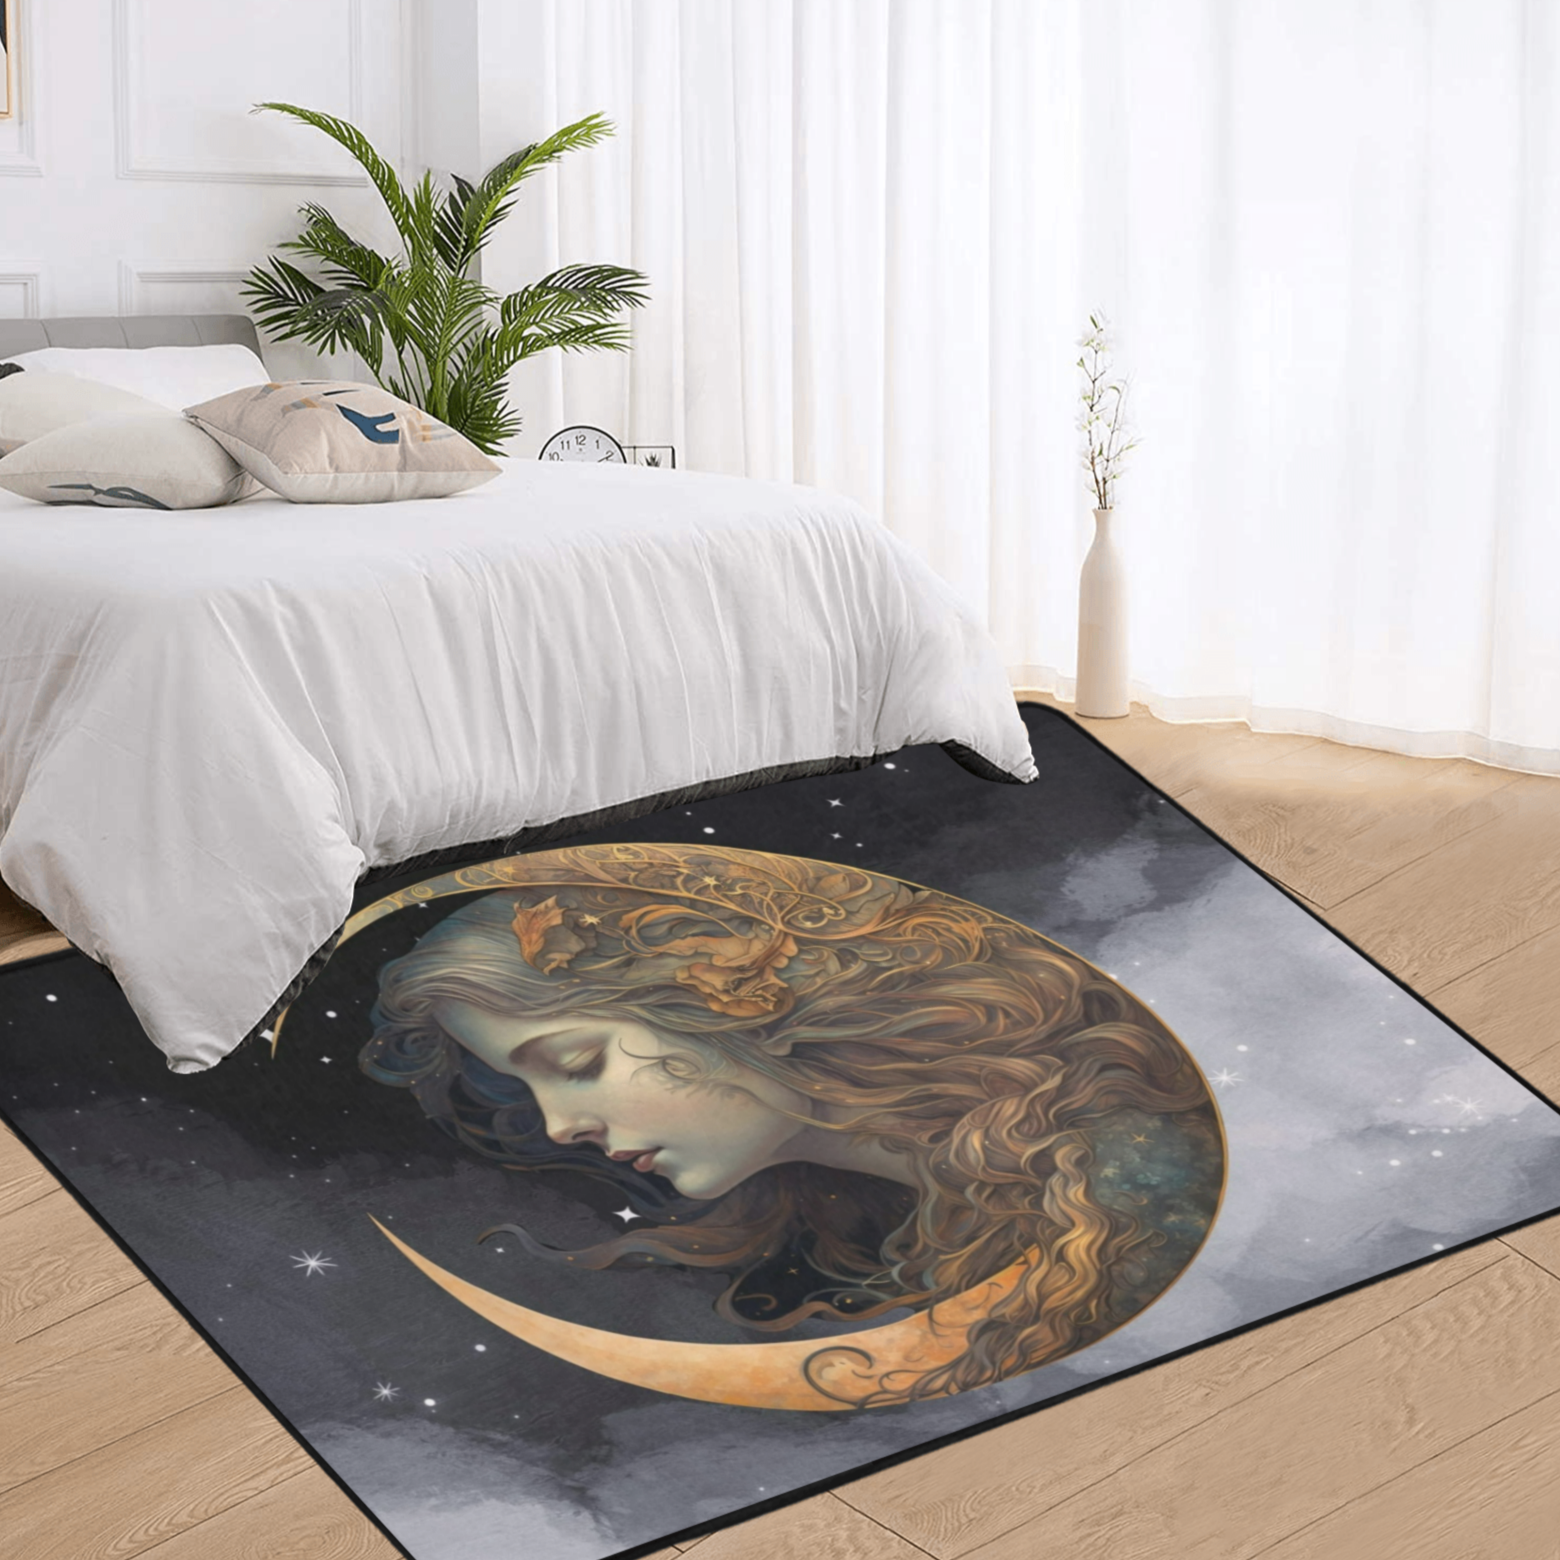 Moon goddess area rug Wicca pagan rug-MoonChildWorld